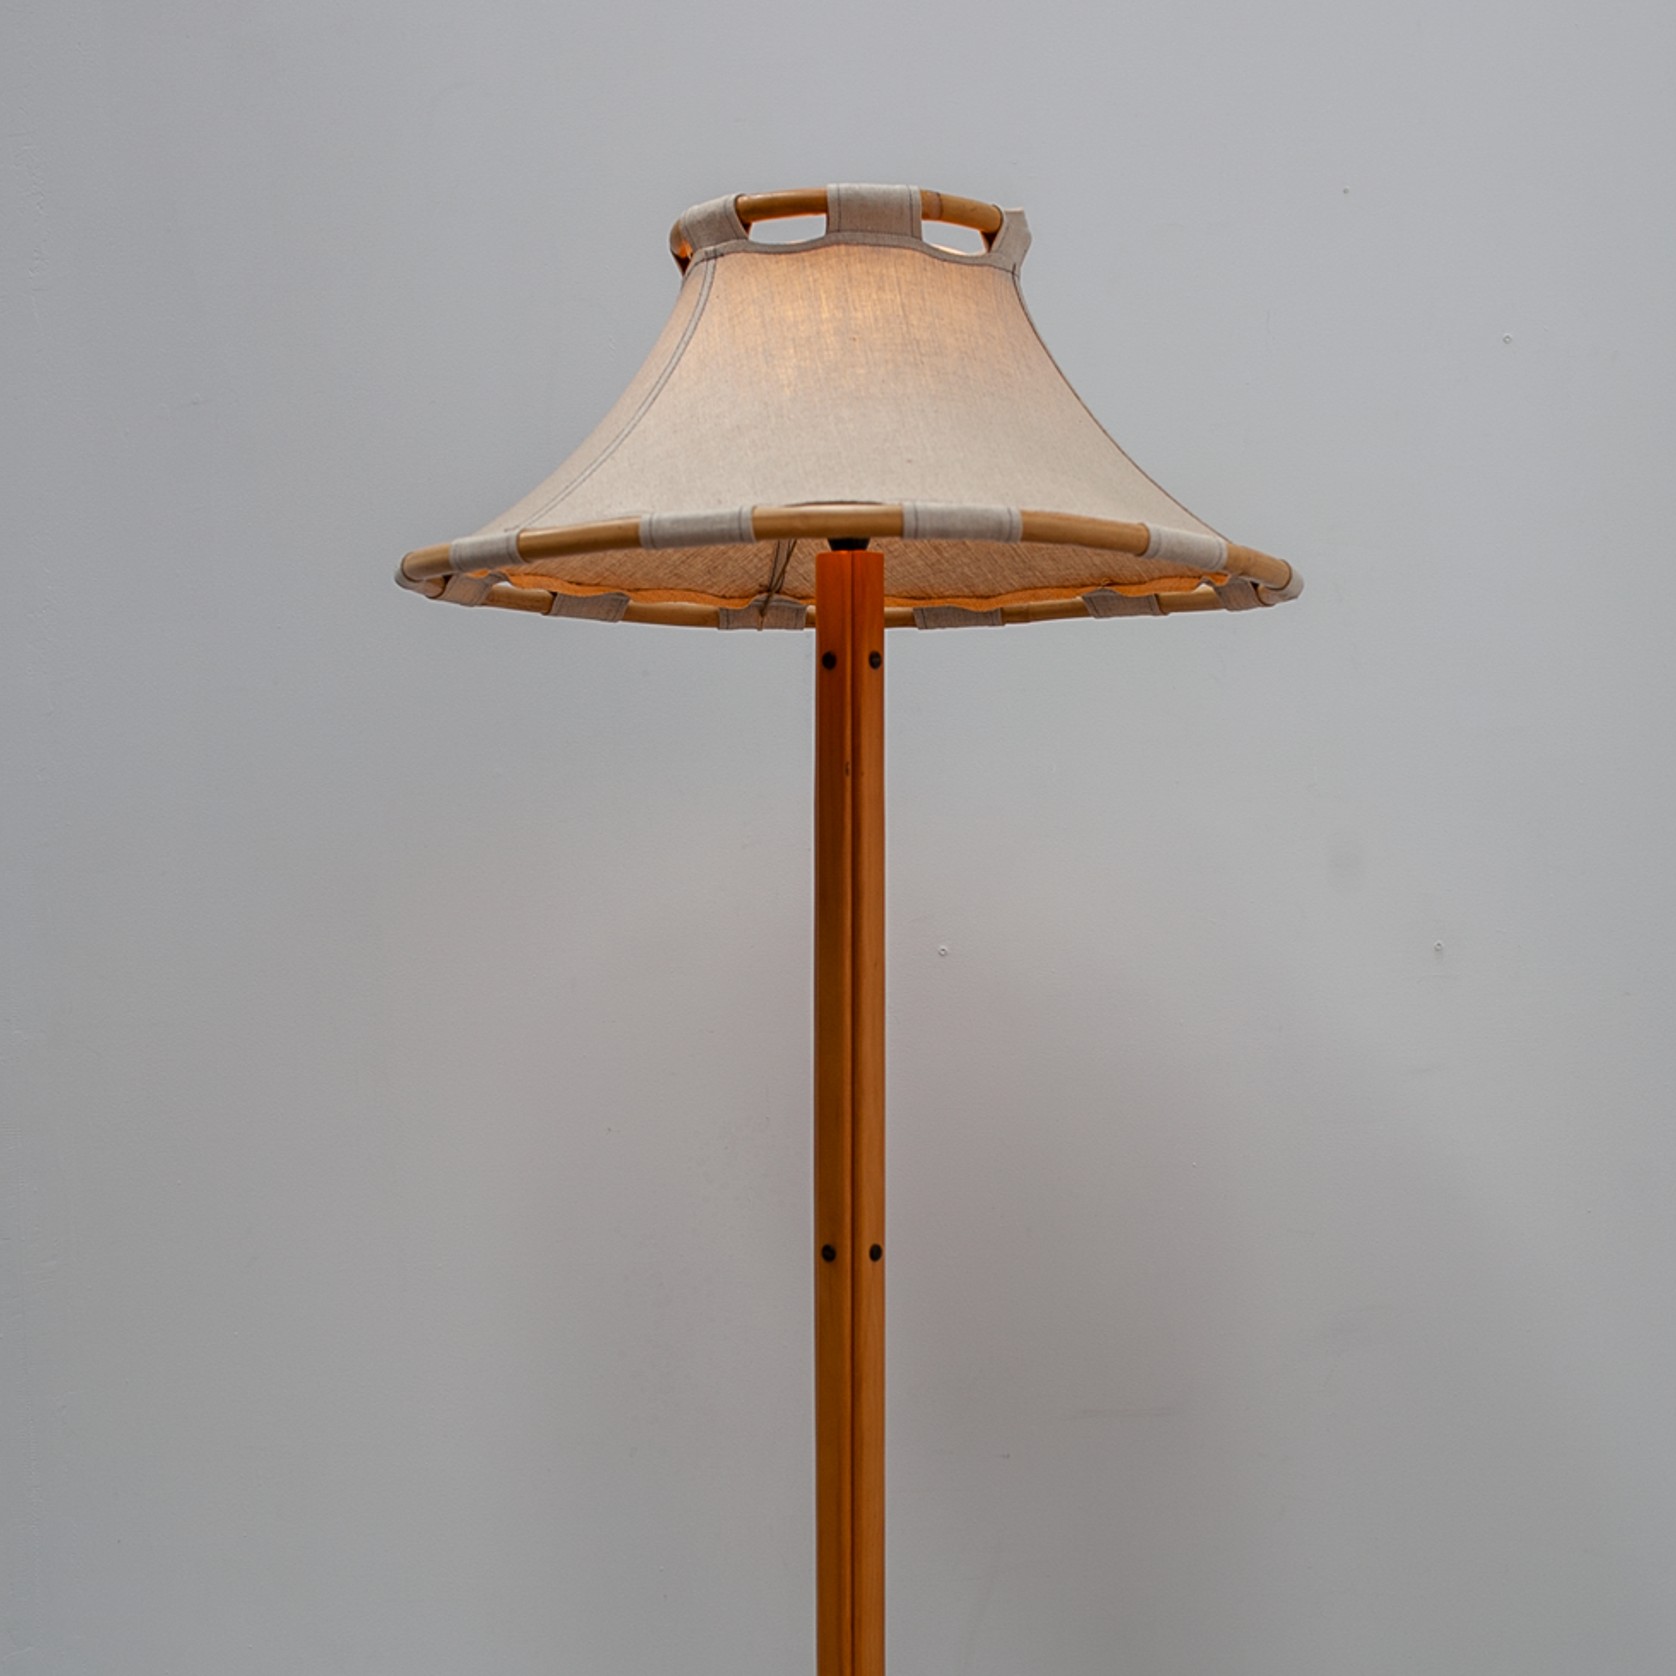 Floor Lamp By Anna Ehrner For Ateljé Lyktan gallery detail image